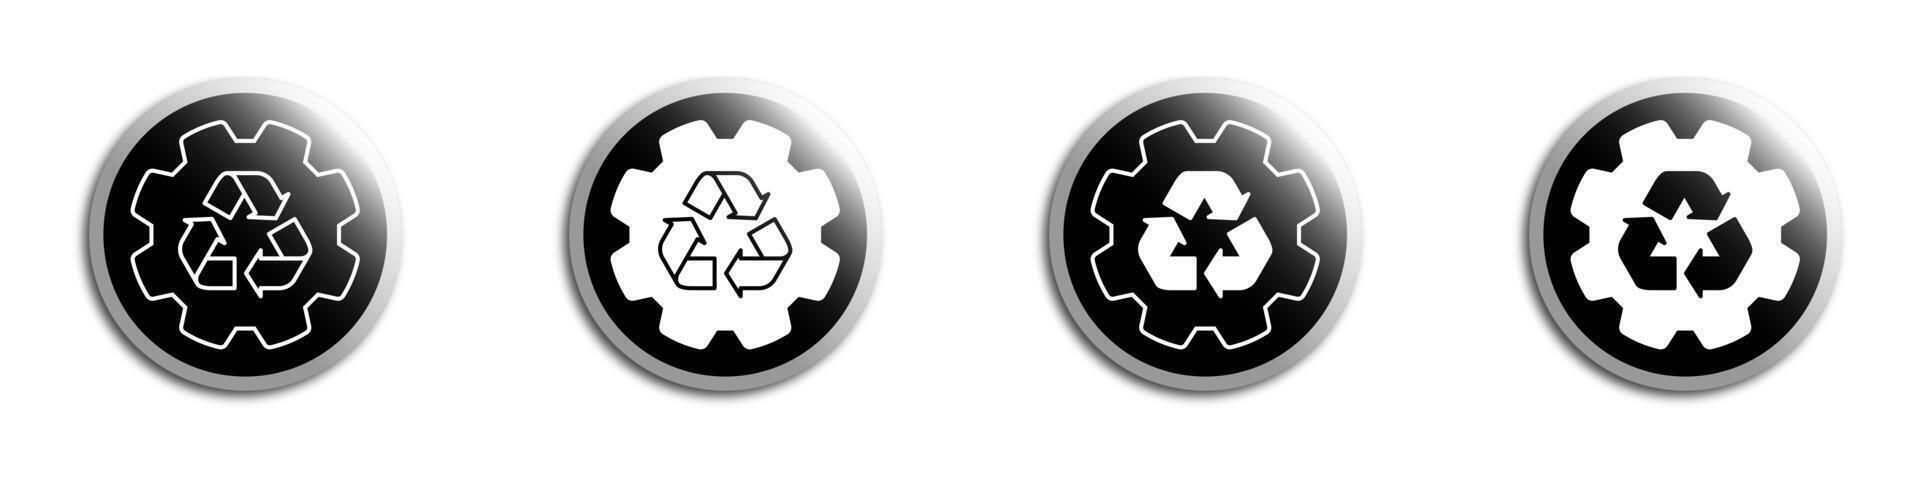 redskap ikon med återvinning symbol inuti. vektor illustration.